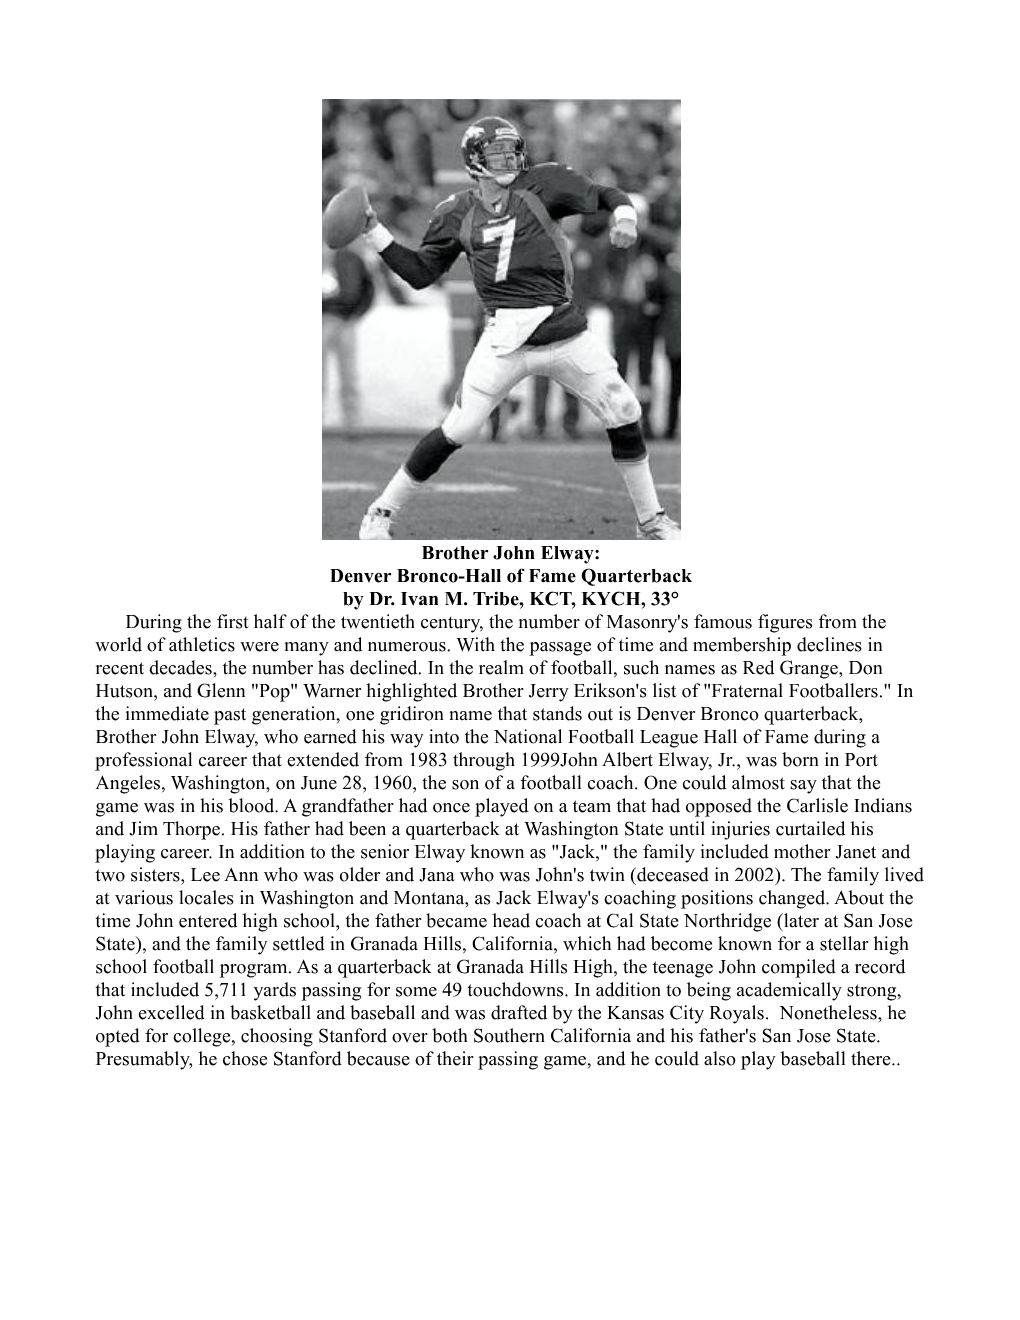 Brother John Elway: Denver Bronco-Hall of Fame Quarterback by Dr